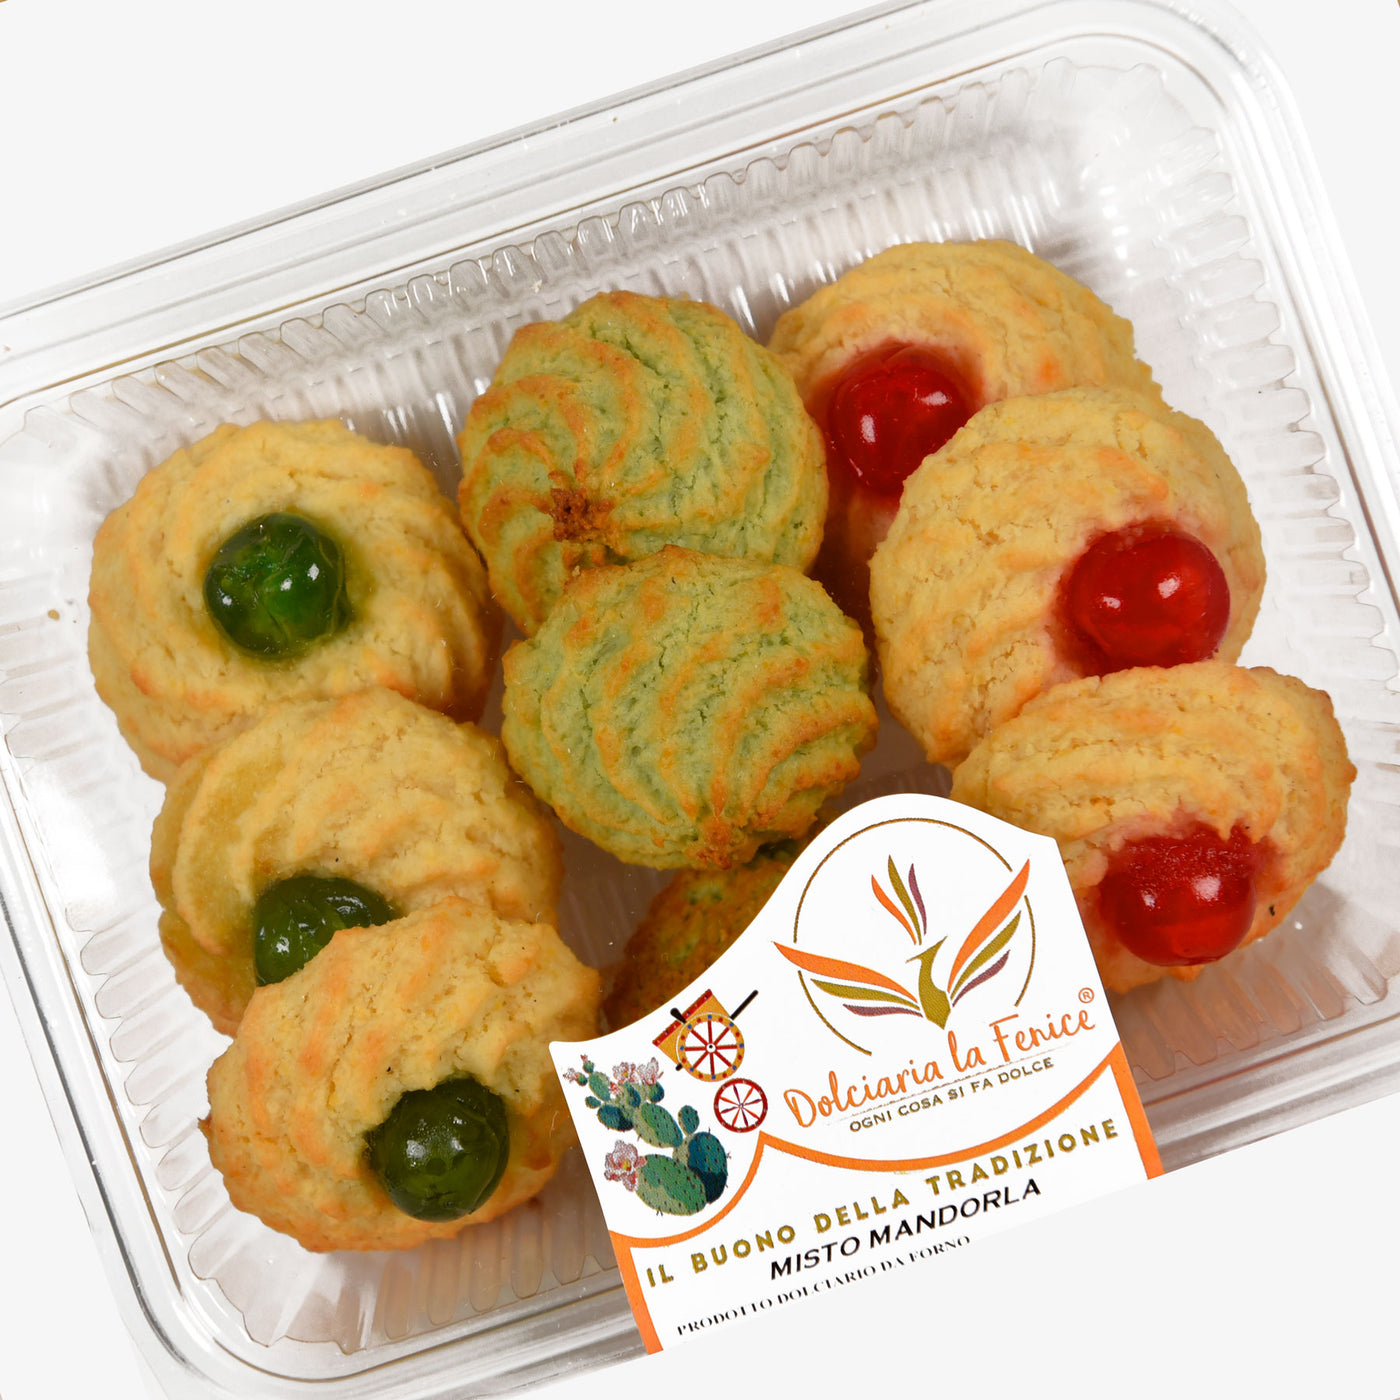 Assortiment de biscuits siciliens Dolceterra - Biscuits aux amandes